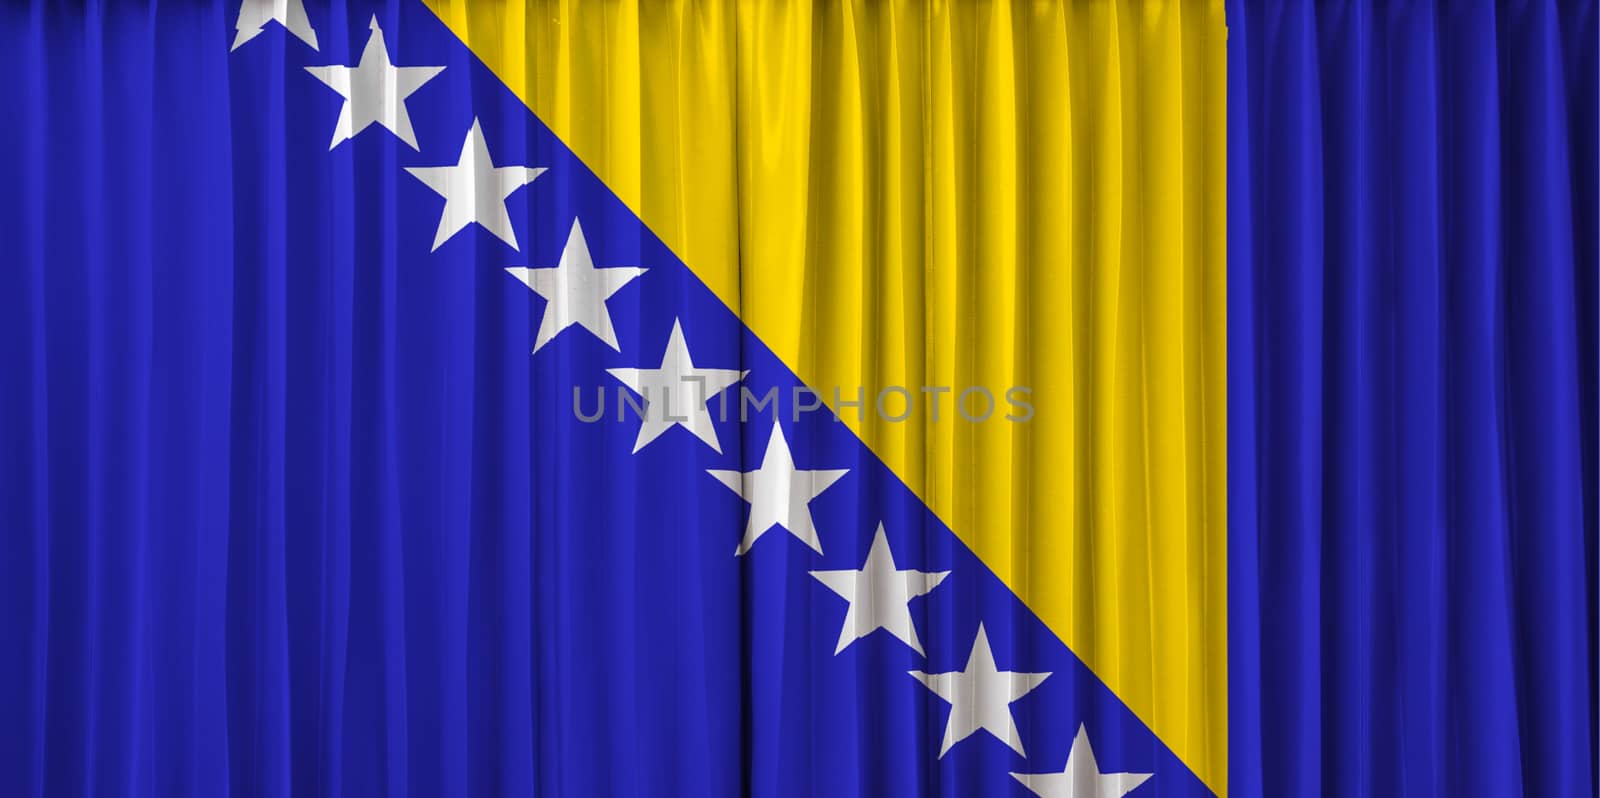 Bosnia flag on curtain